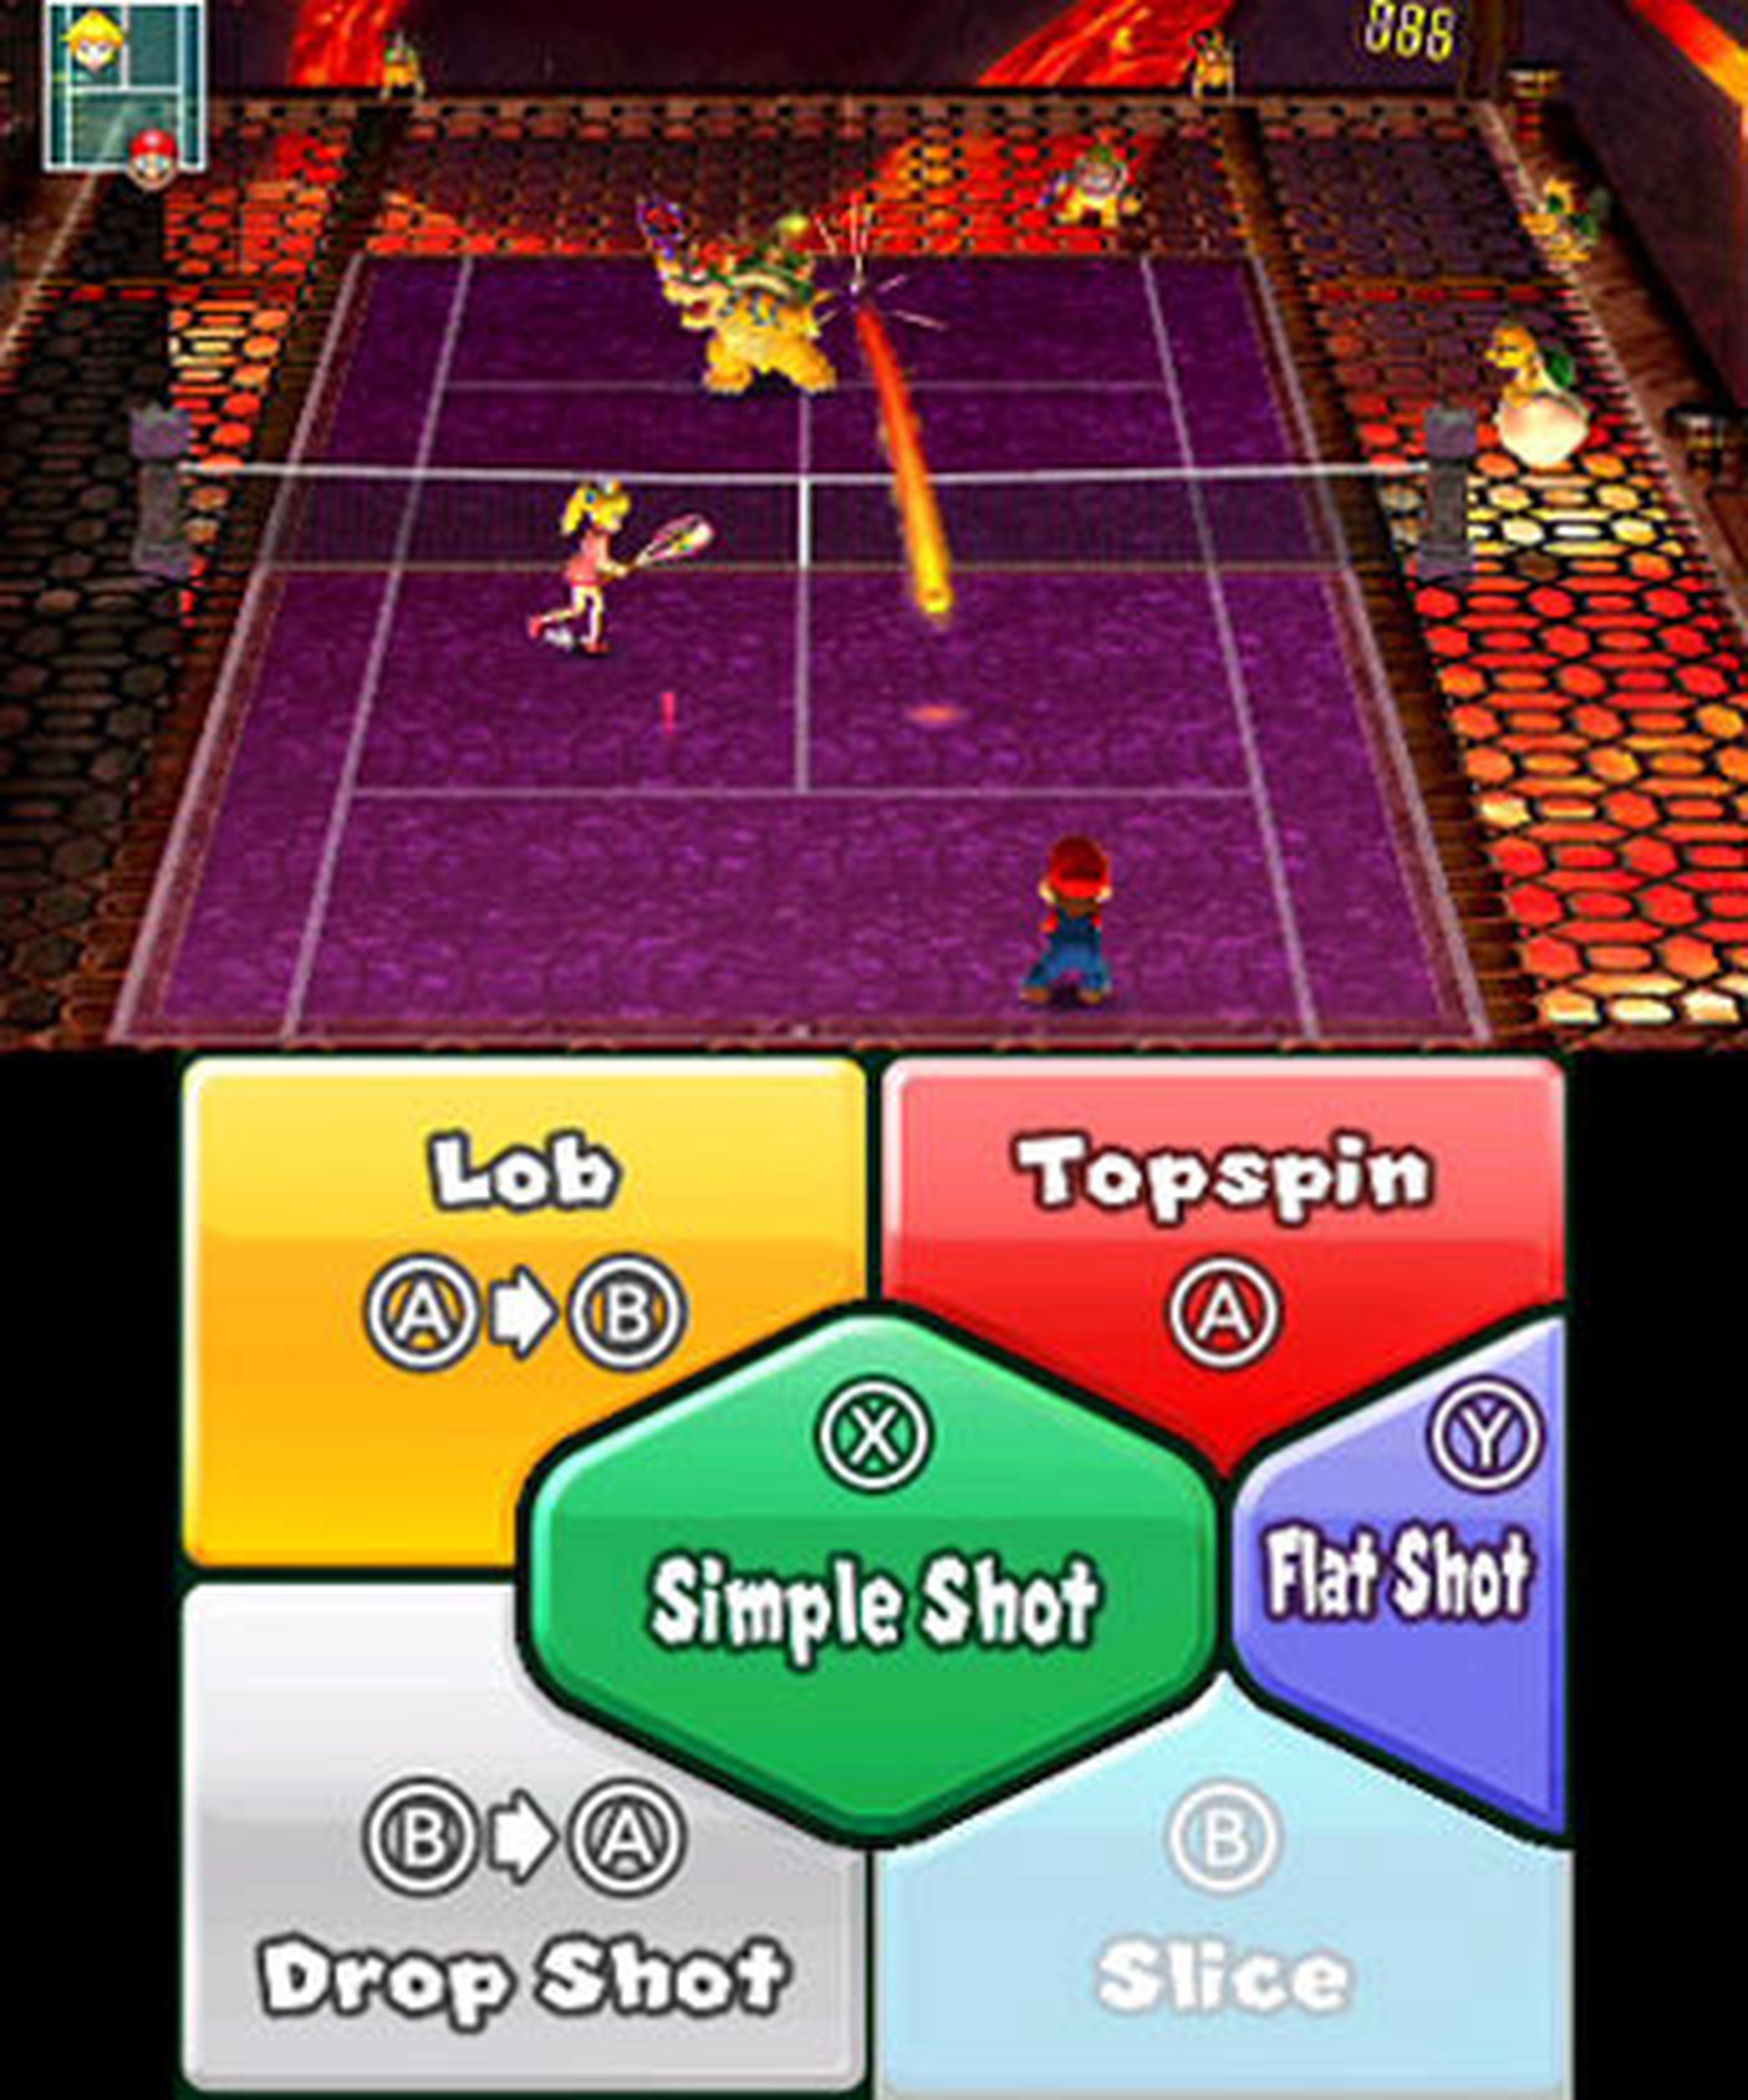 GDC 2012: Mario Tennis Open